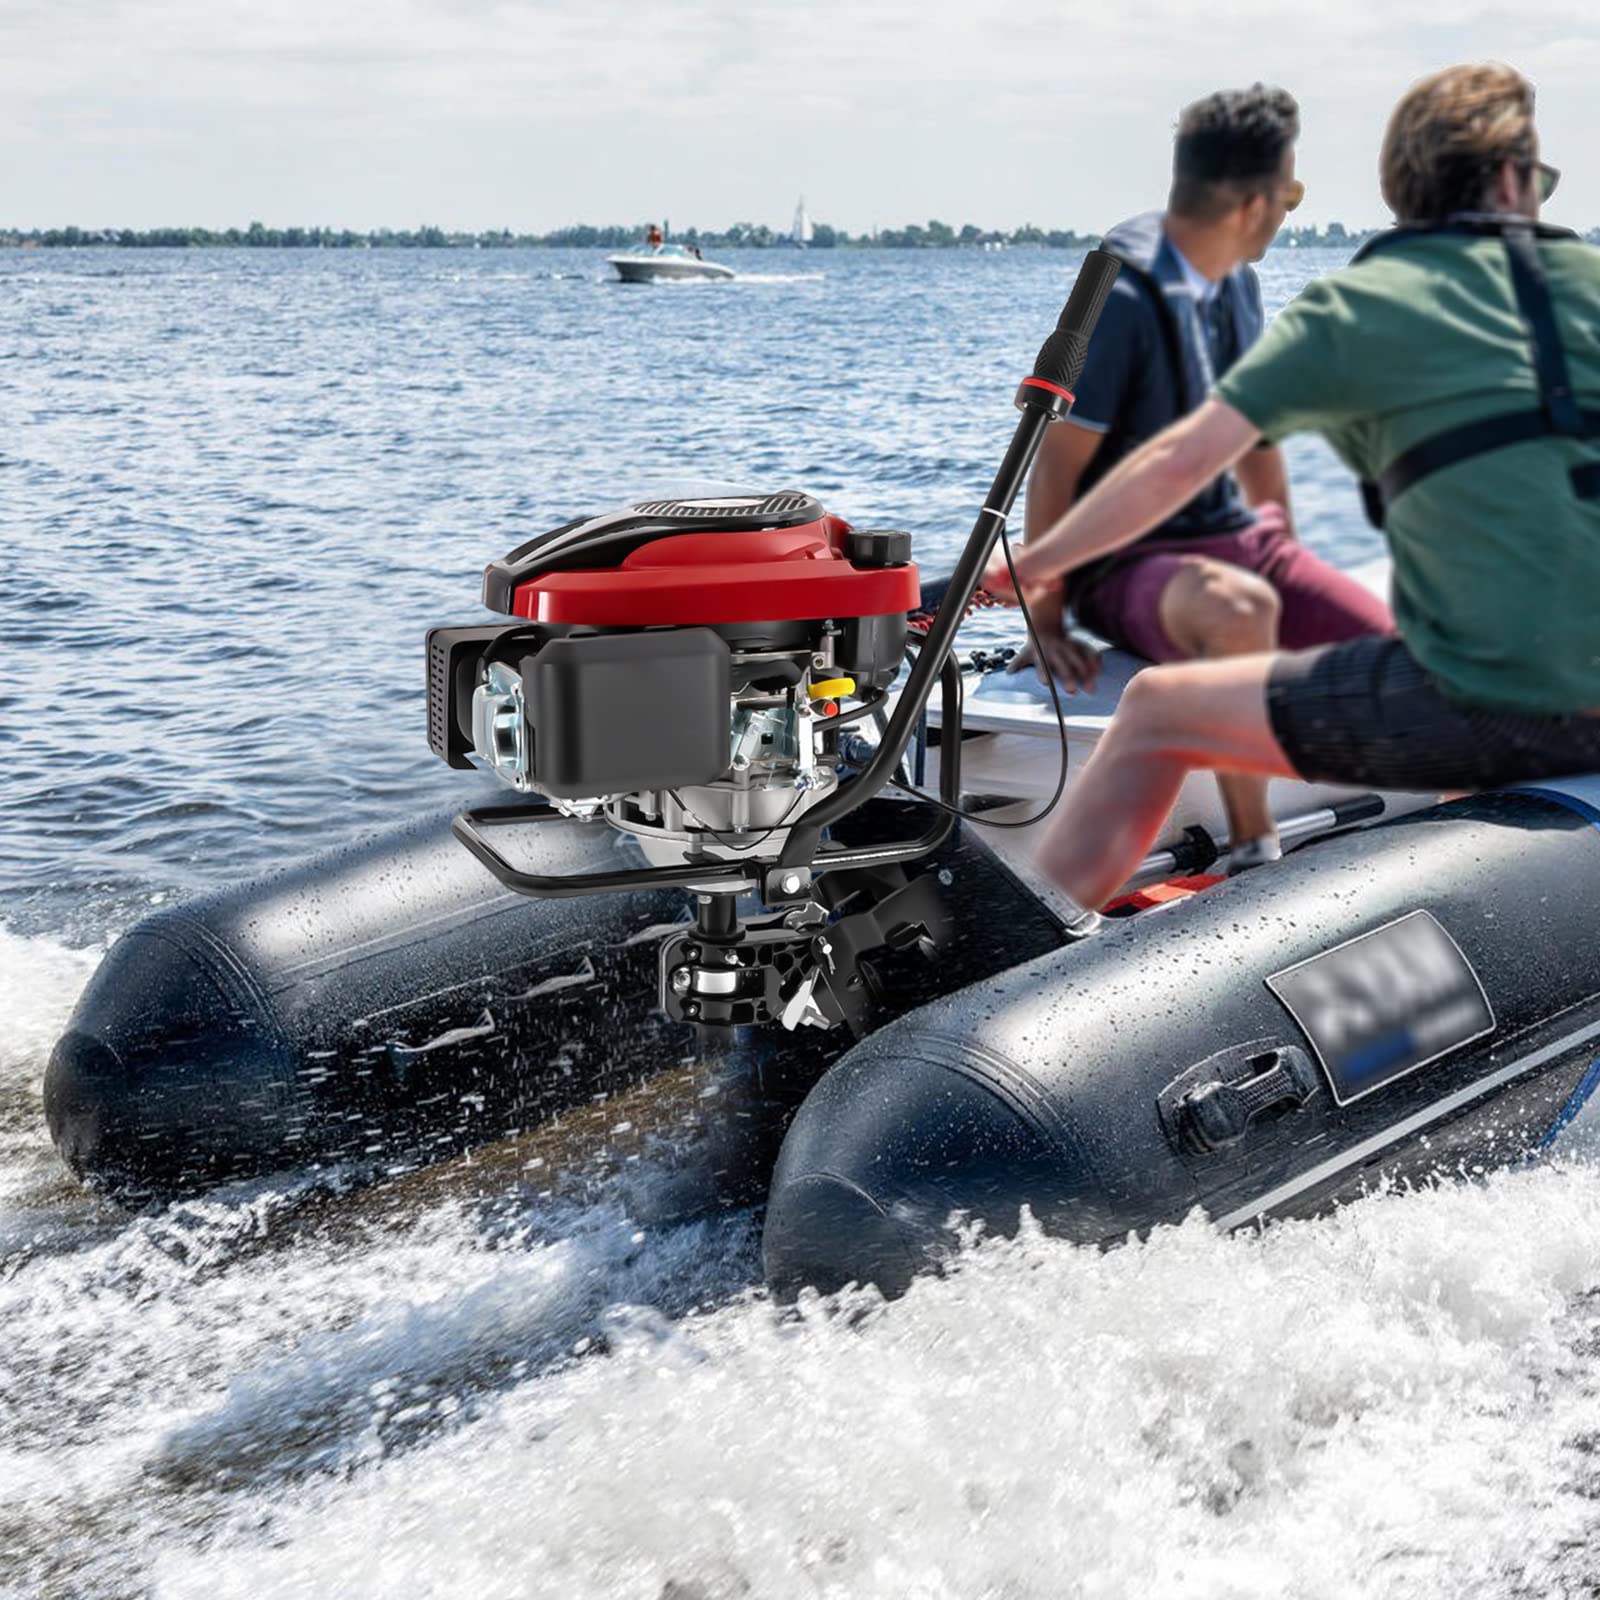 4-Takt-Außenbordmotor Benzin Bootsmotor 8 PS Luftgekühlt TCI Außenborder Luftkühlung Elektromotor Benzinmotor Bootsmotor für Schlauchboote, Fischerboote von HwZeQr